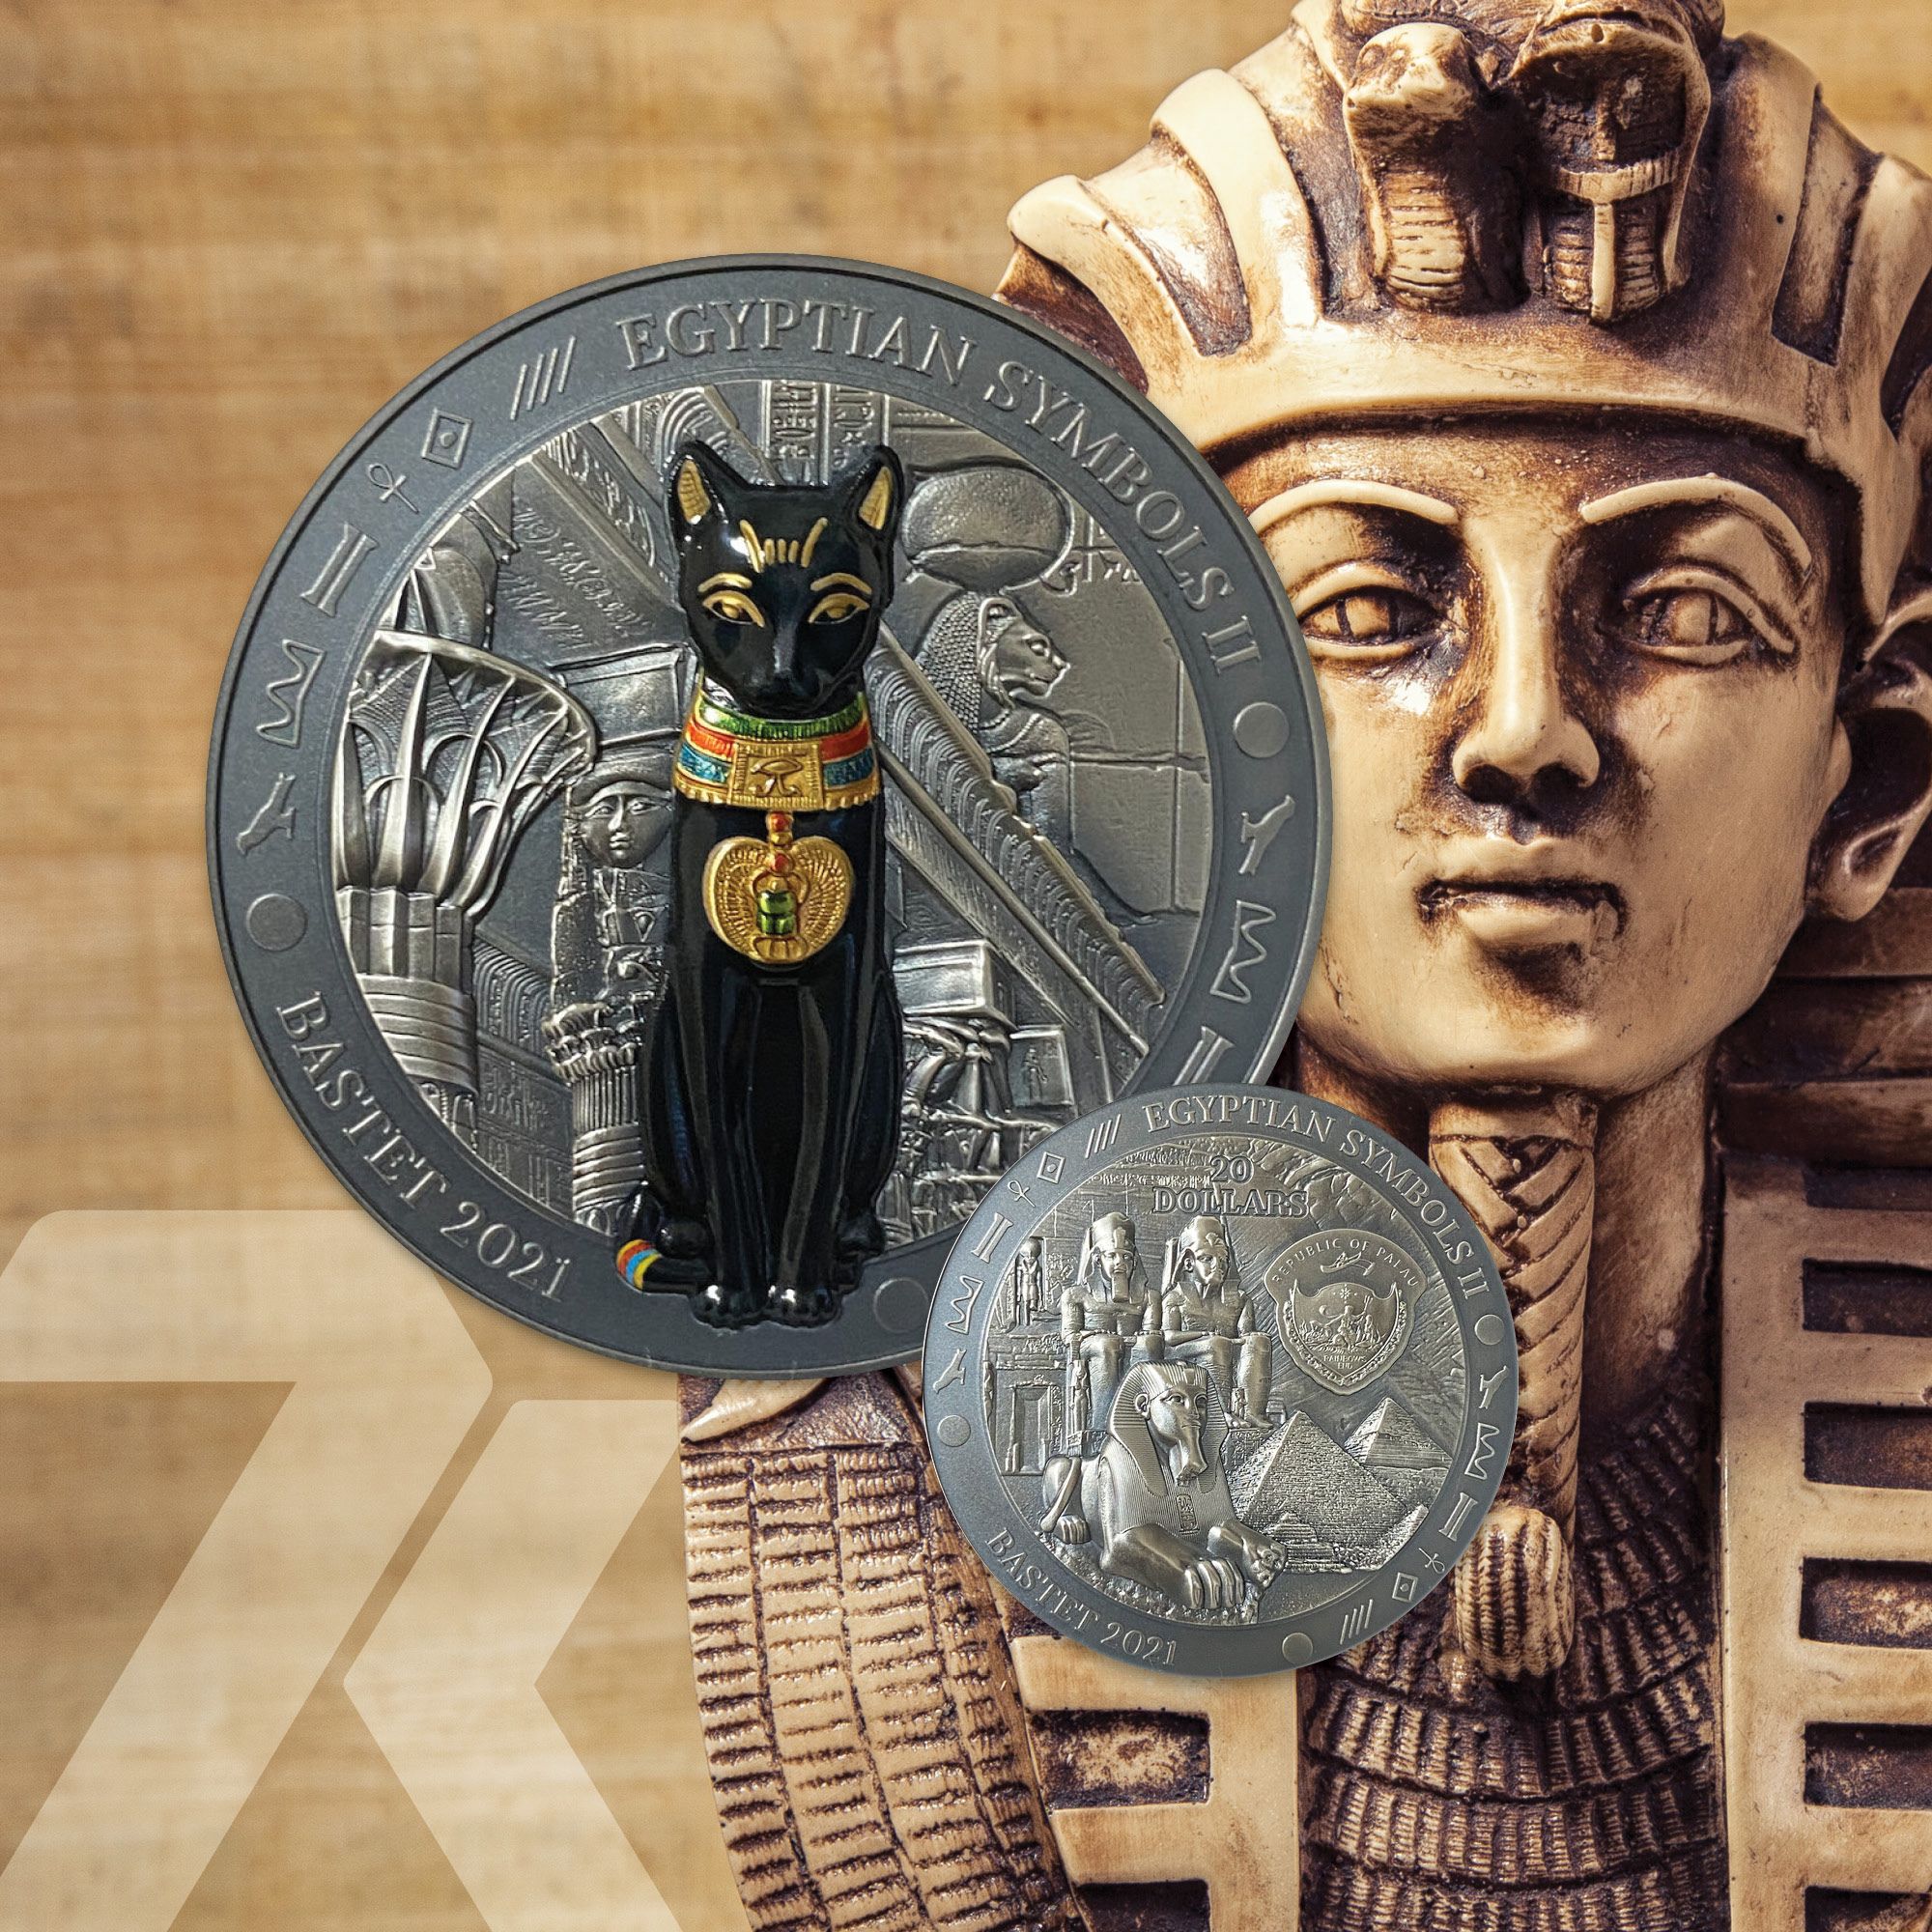 Egyptian Symbols II Bastet 3oz Silver Coin